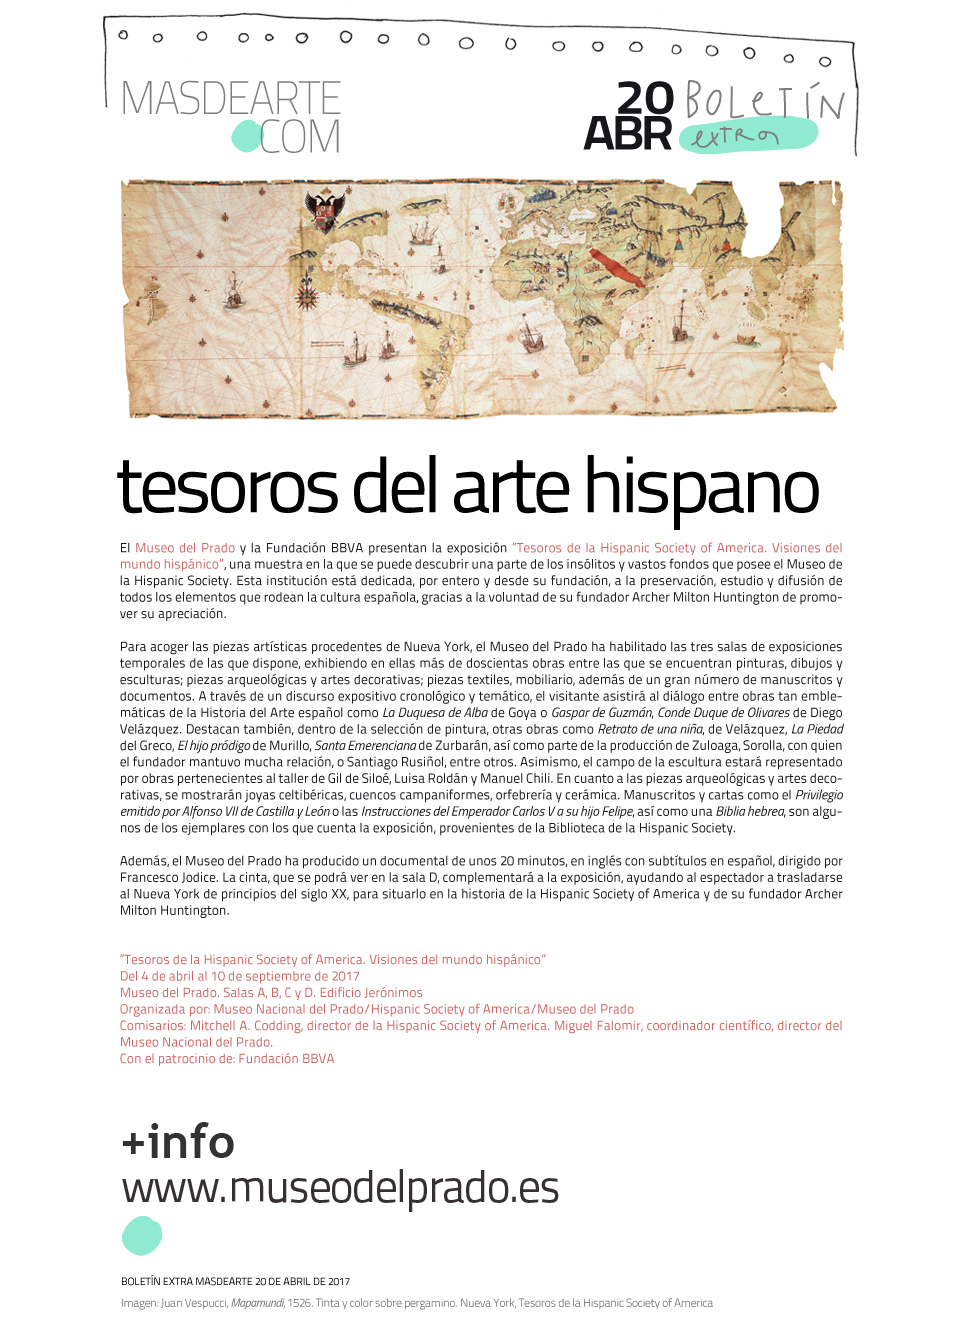 Tesoros de la Hispanic Society of America en el Museo del Prado. Hasta el 10 de septiembre de 2017